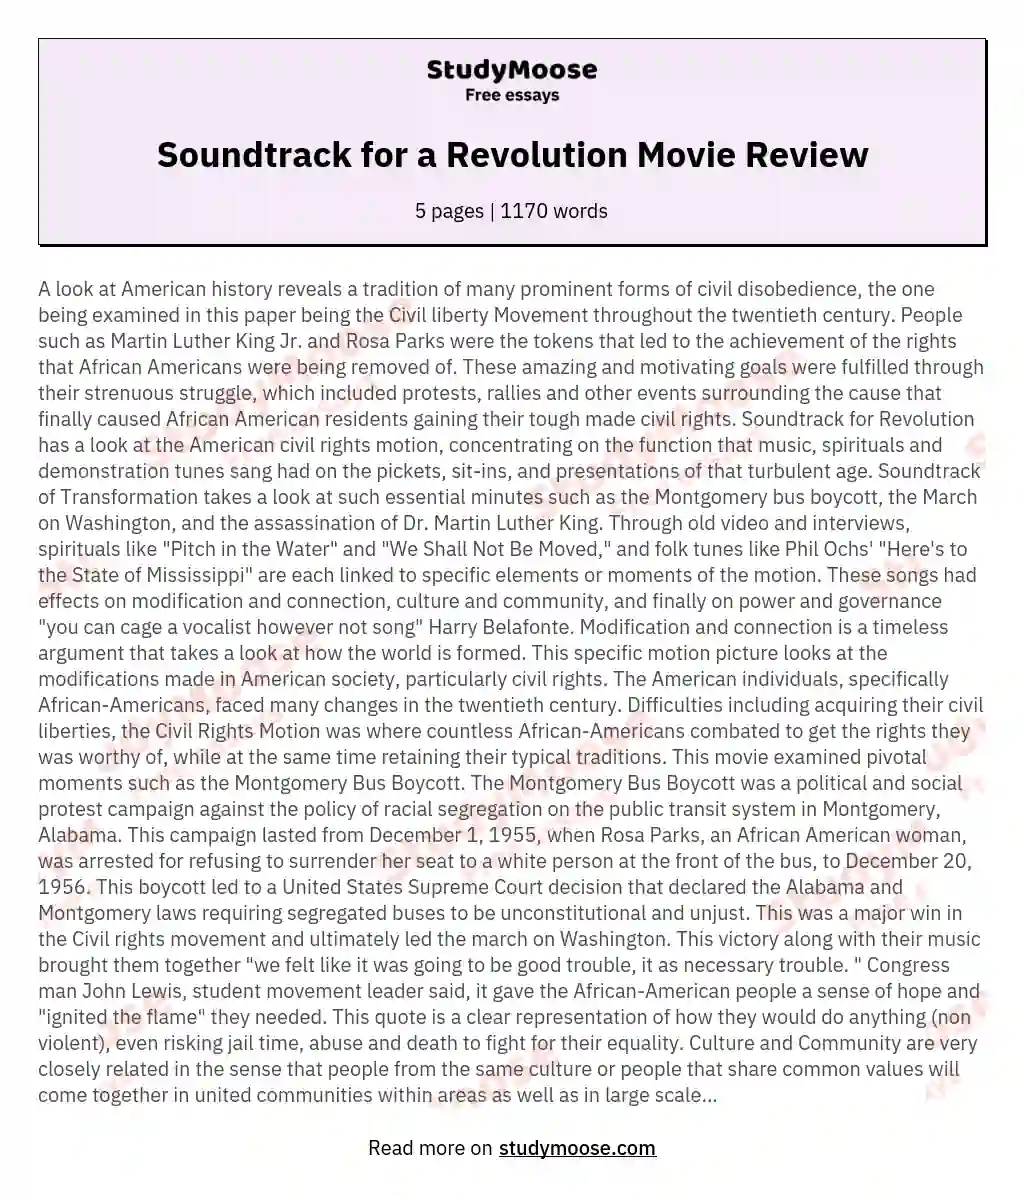 Soundtrack for a Revolution Movie Review essay